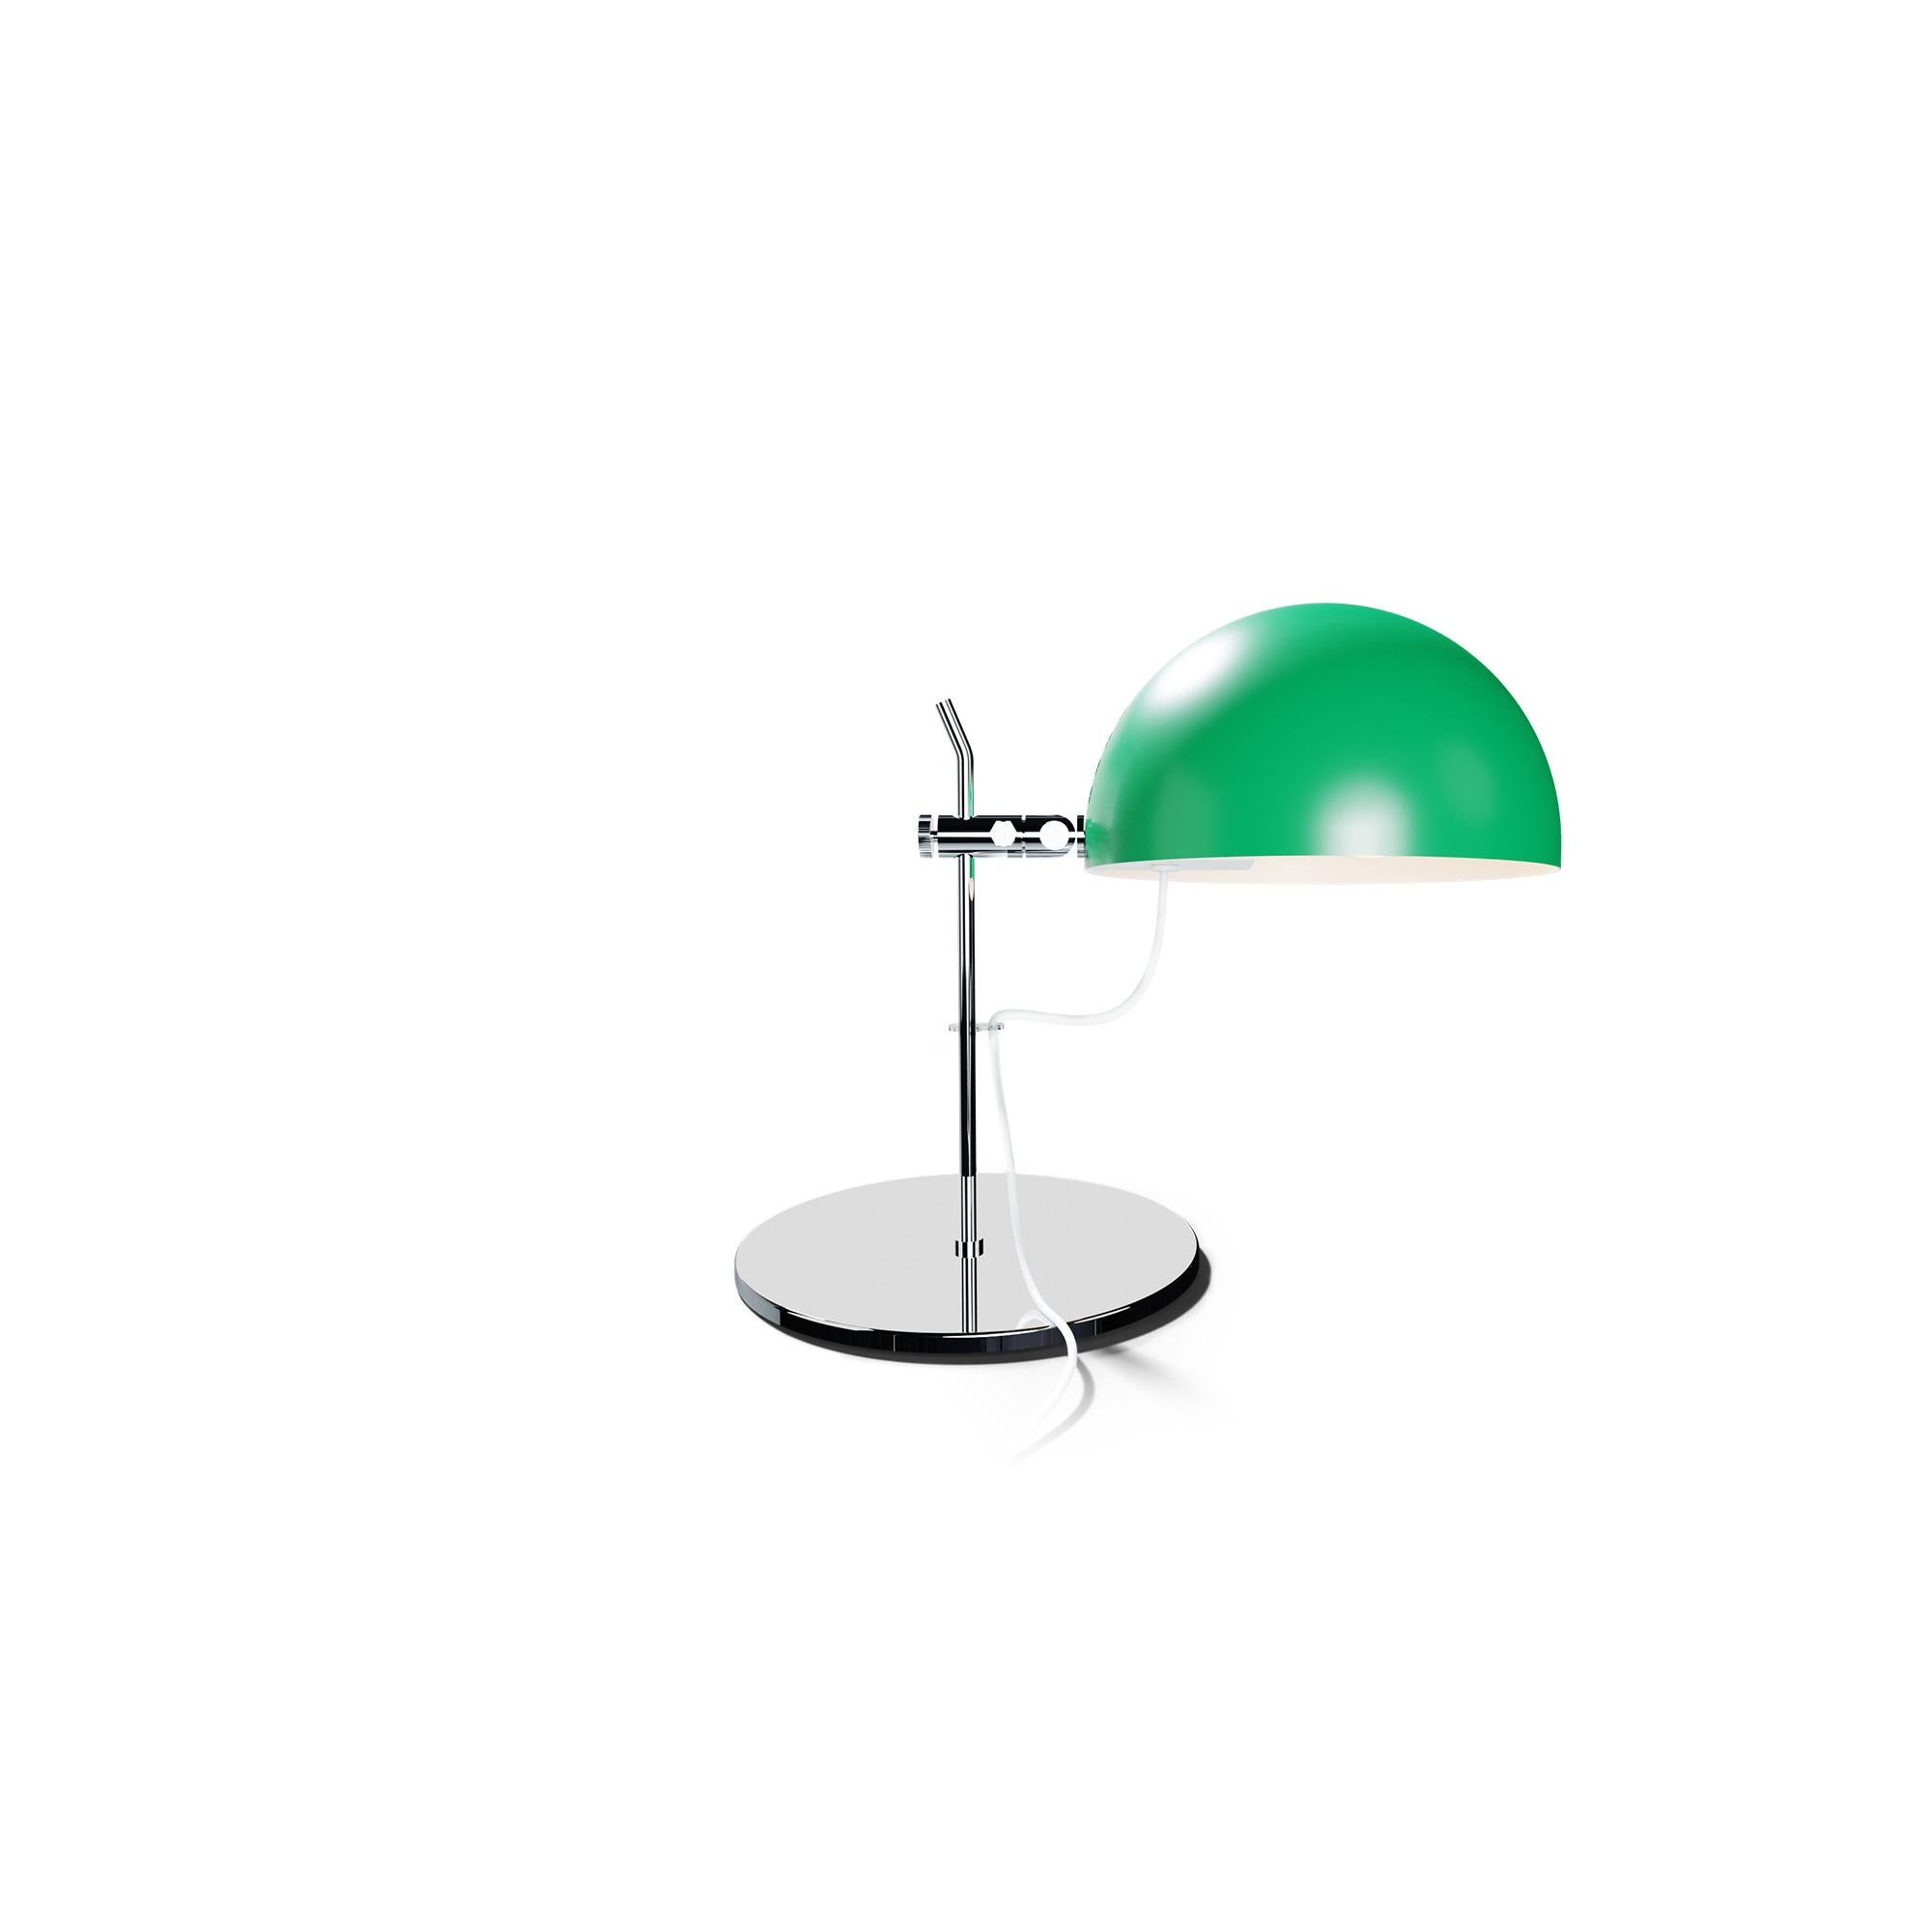 Alain Richard 'A22' Desk Lamp in Chrome for Disderot For Sale 5